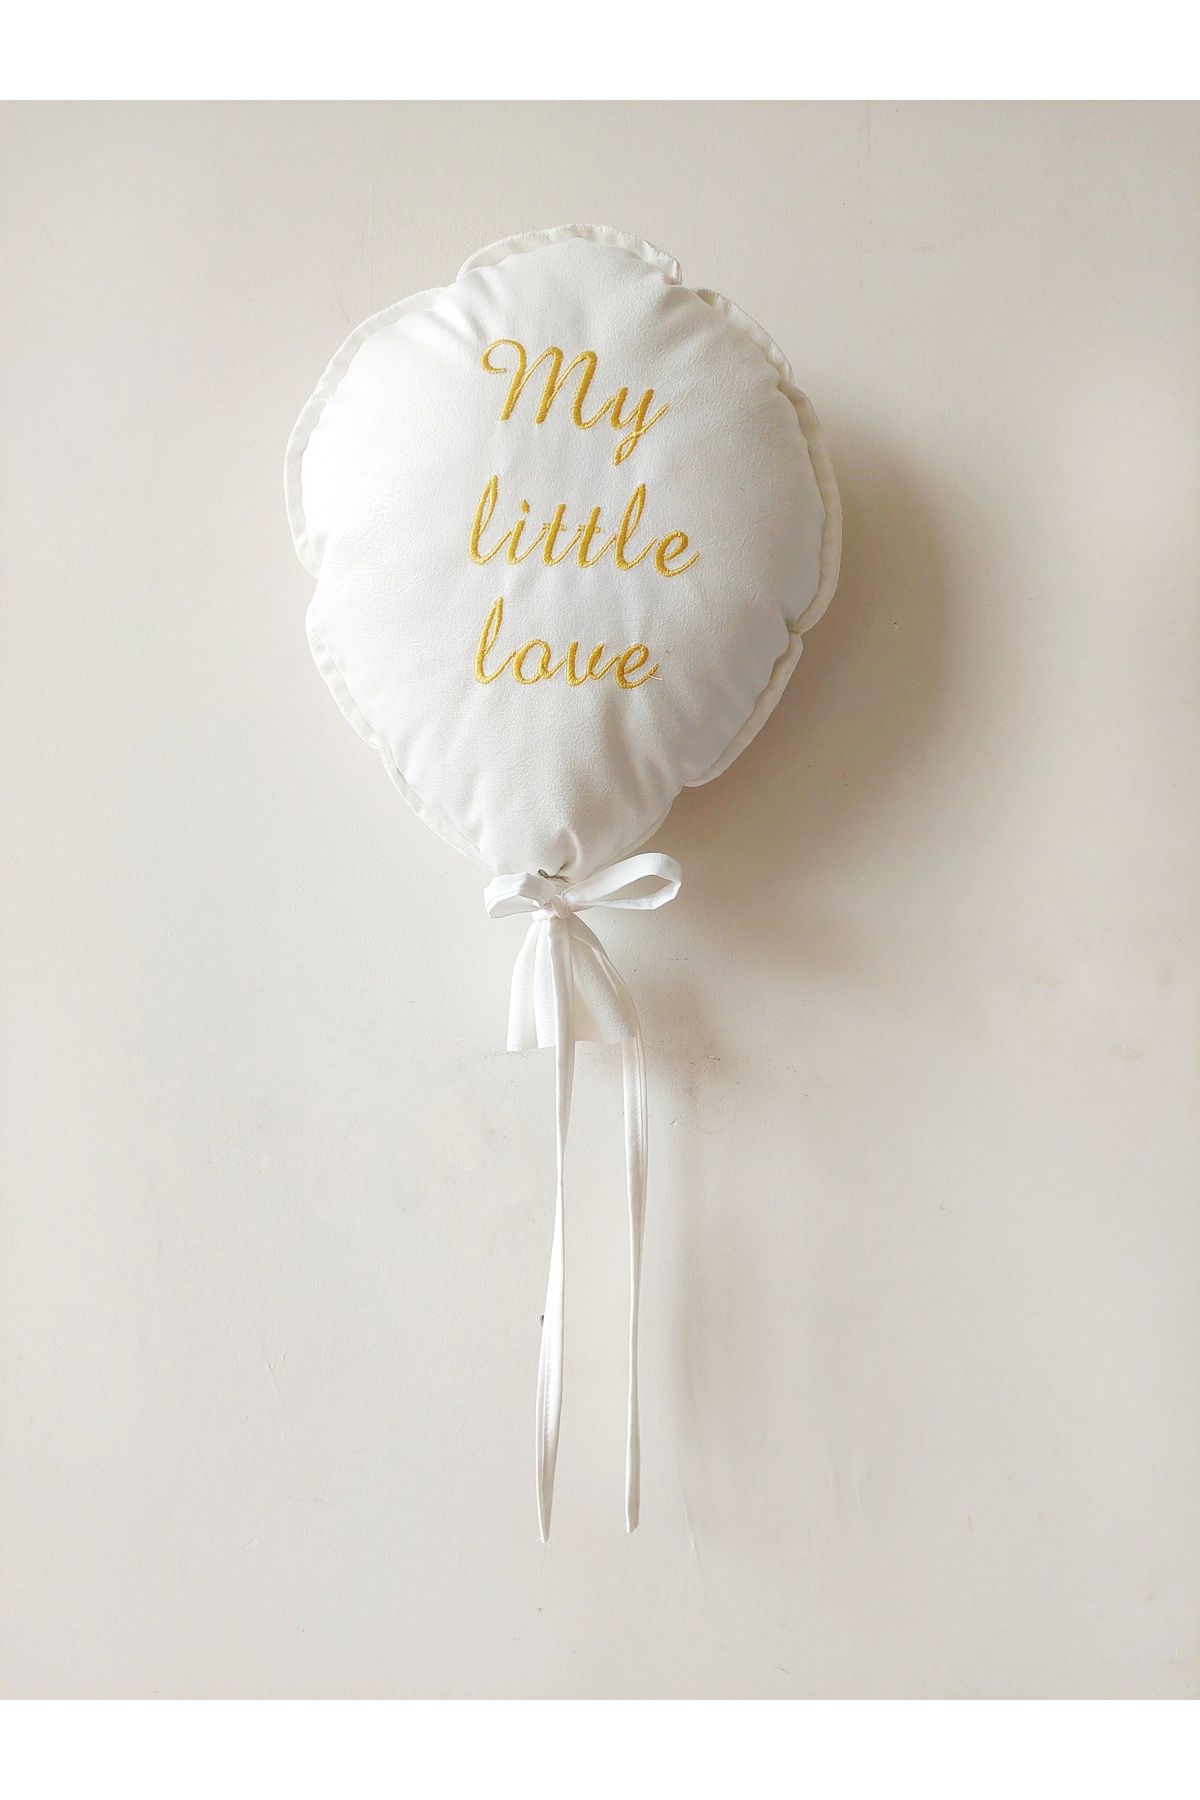 yupobebek Balon Yastık dekoratif my little love nakışlı isimli yastık takı yastığı bebek çocuk odası